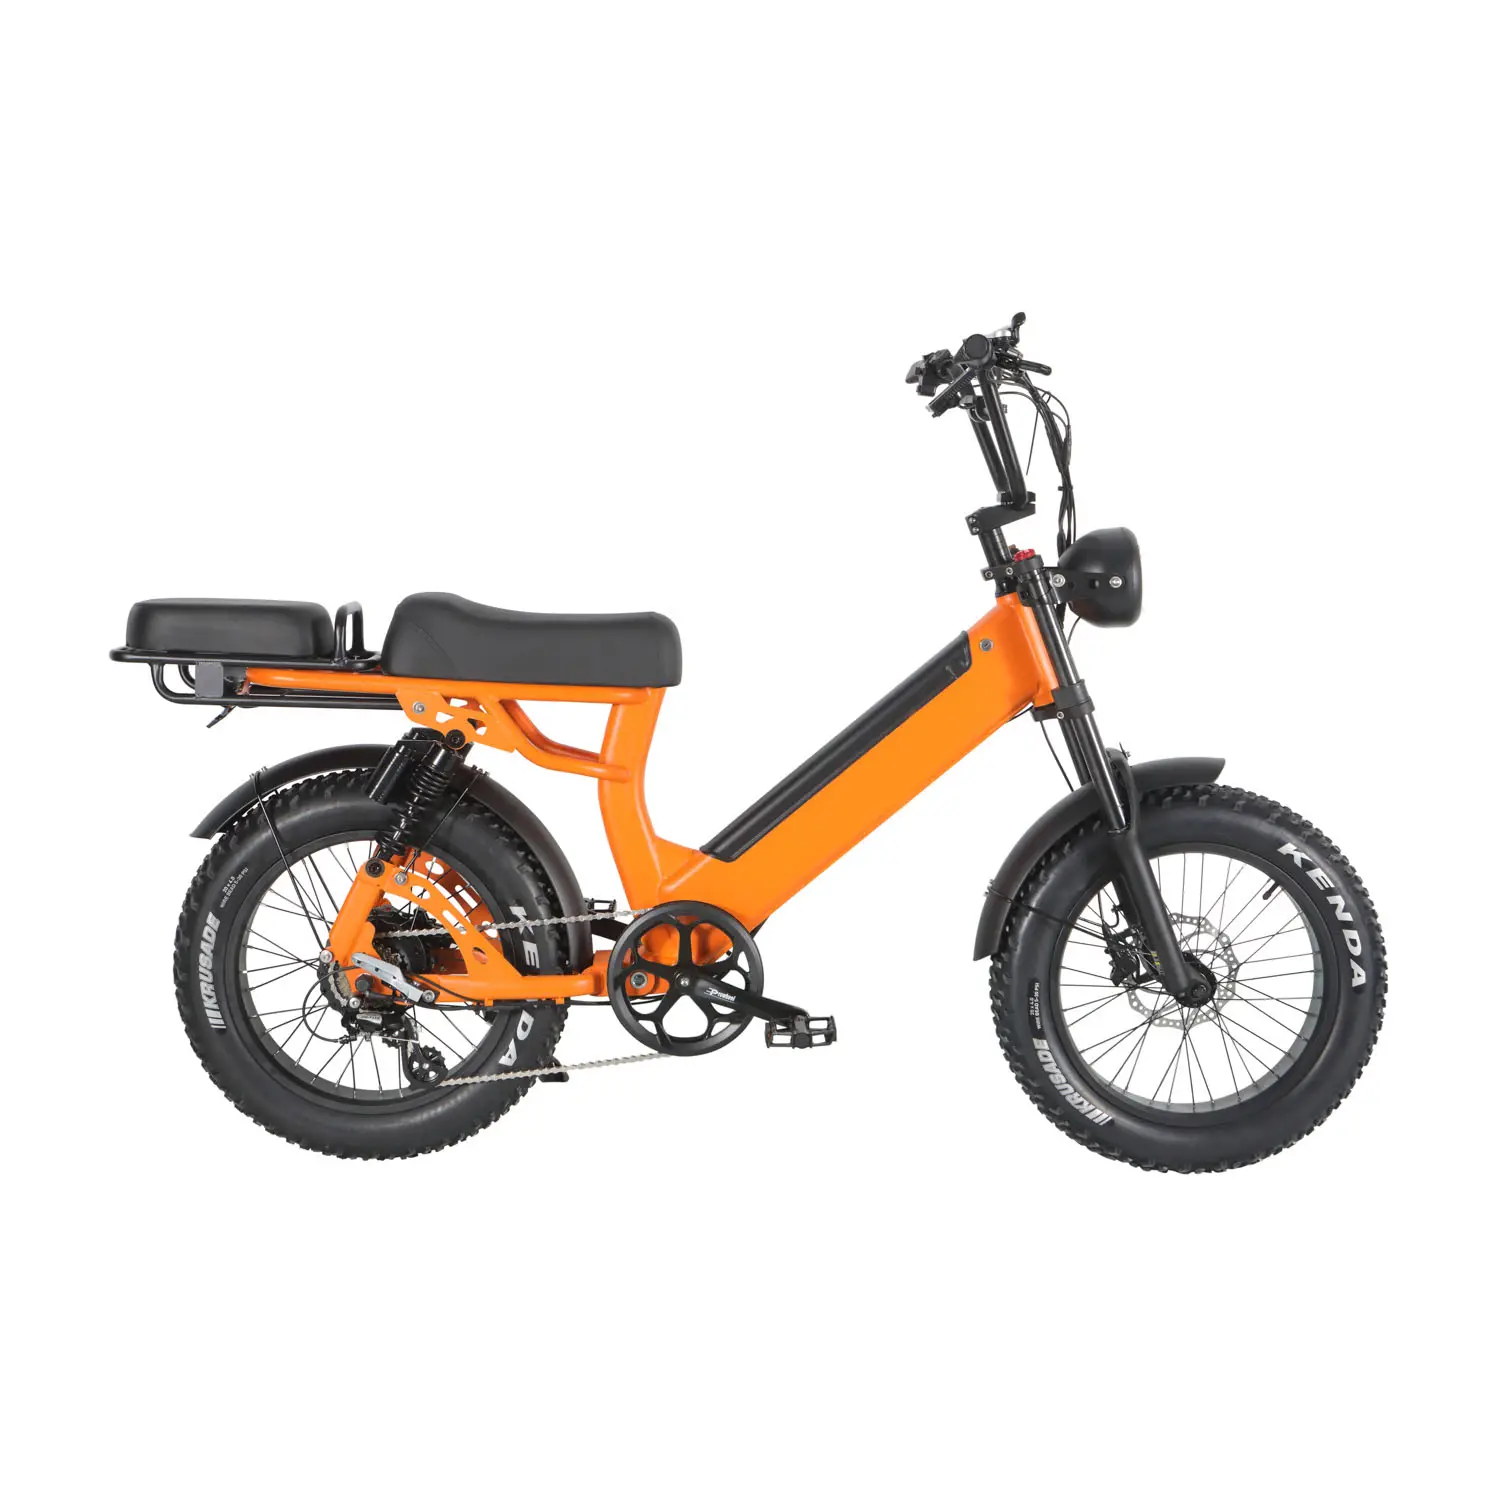 Elion M1 sepeda listrik Model Moped yang pada tahun ini